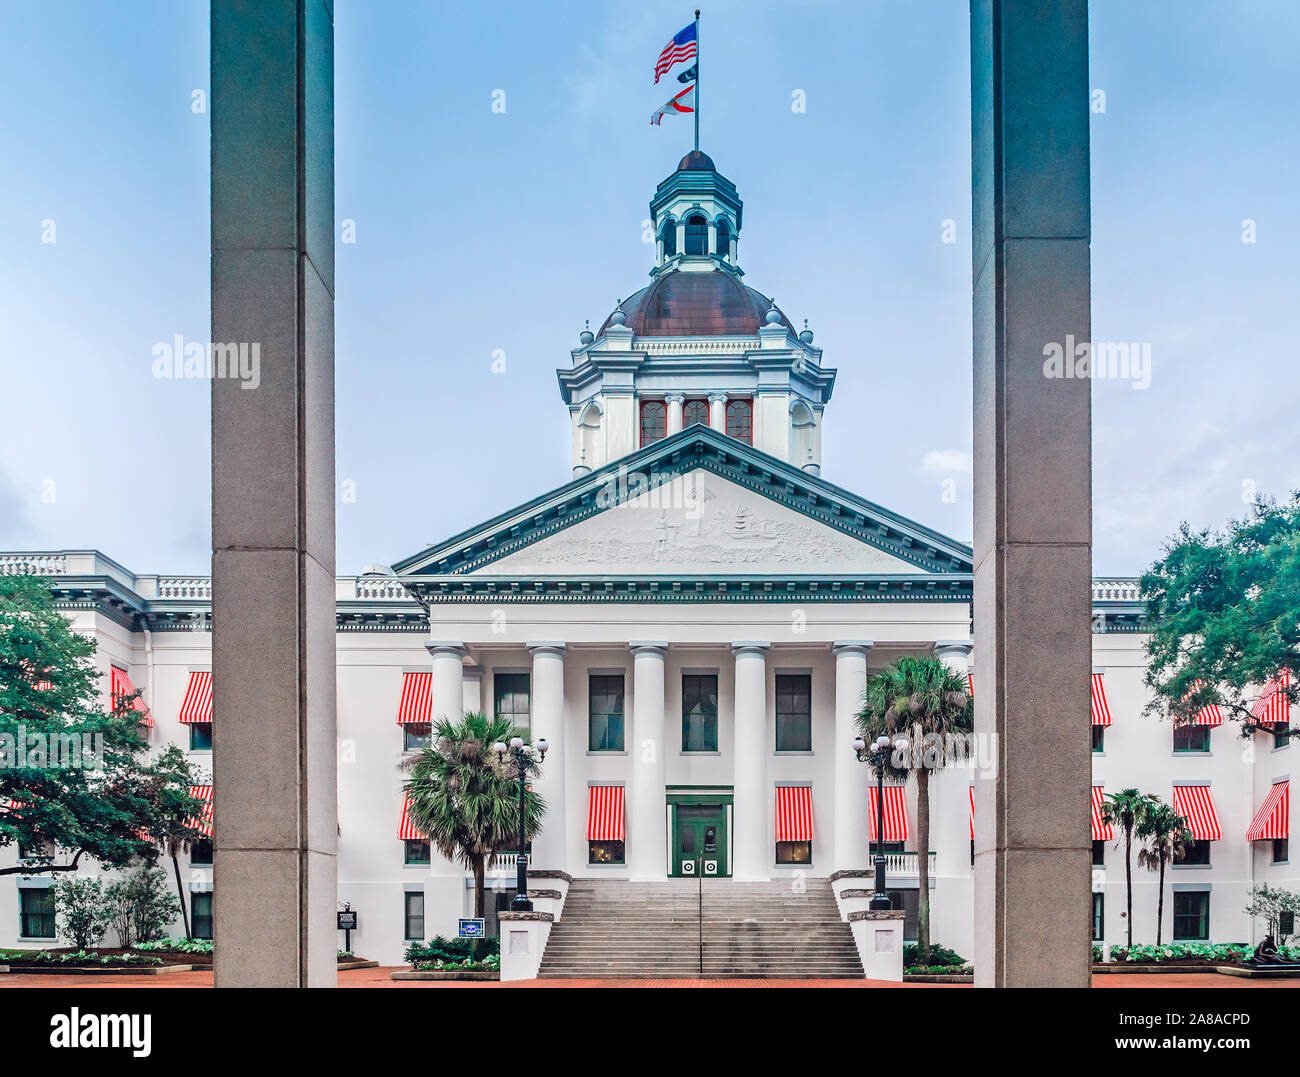 Das alte Florida State Capitol Building wird dargestellt, 20. Juli 2013 in Tallahassee, Florida. Die klassischen Revival Stil Gebäude wurde 1845 errichtet. Stockfoto